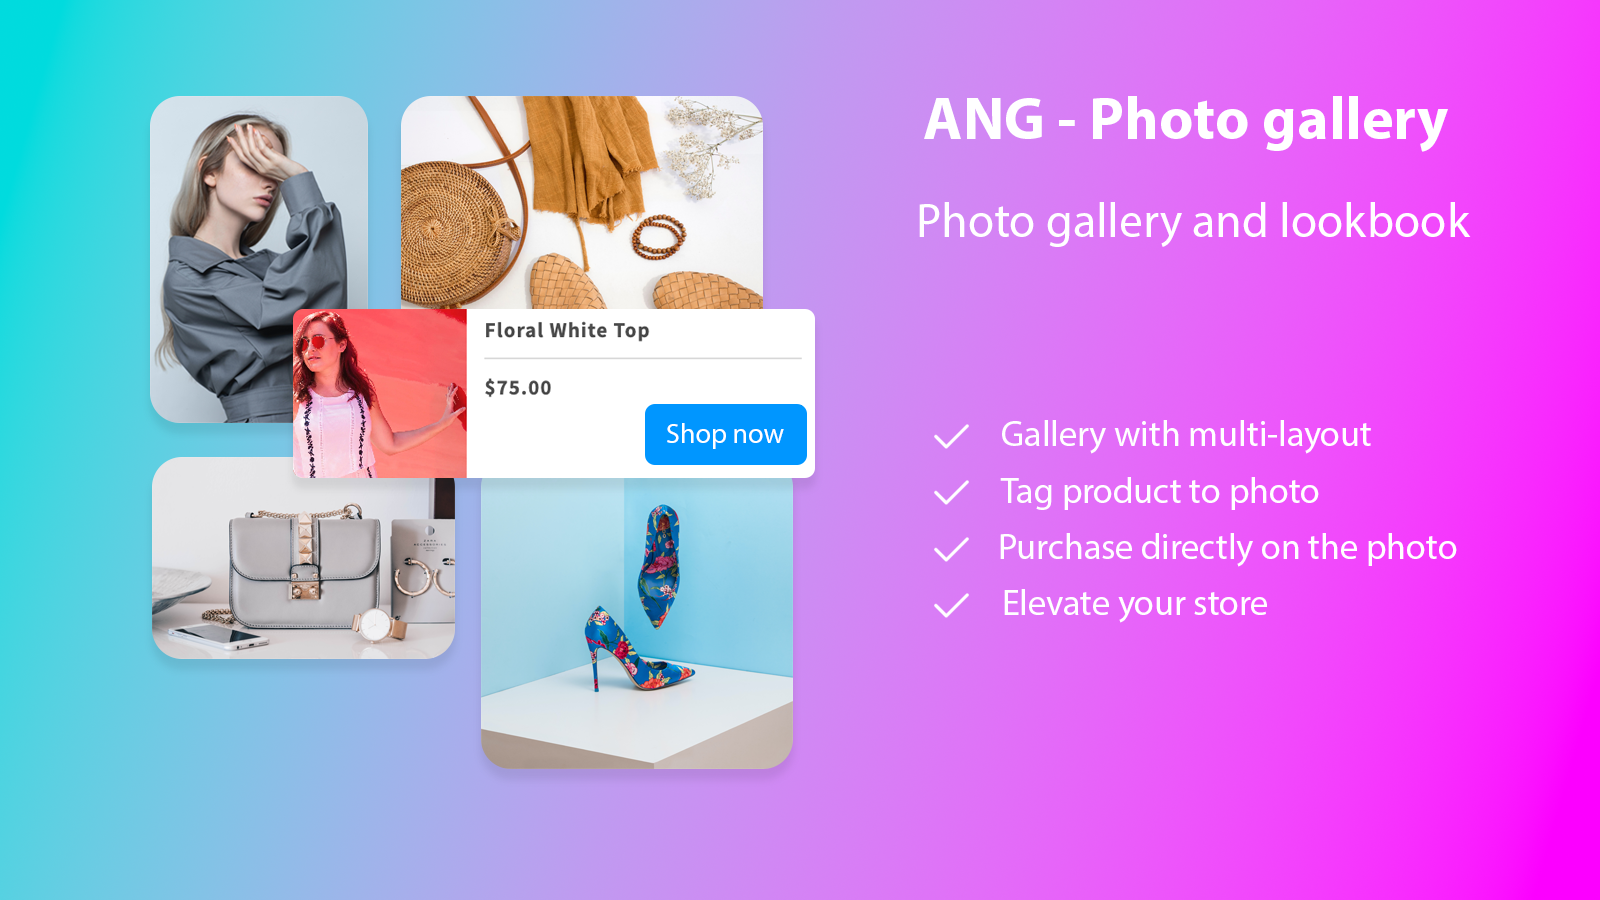 ANG ‑ Photo Gallery